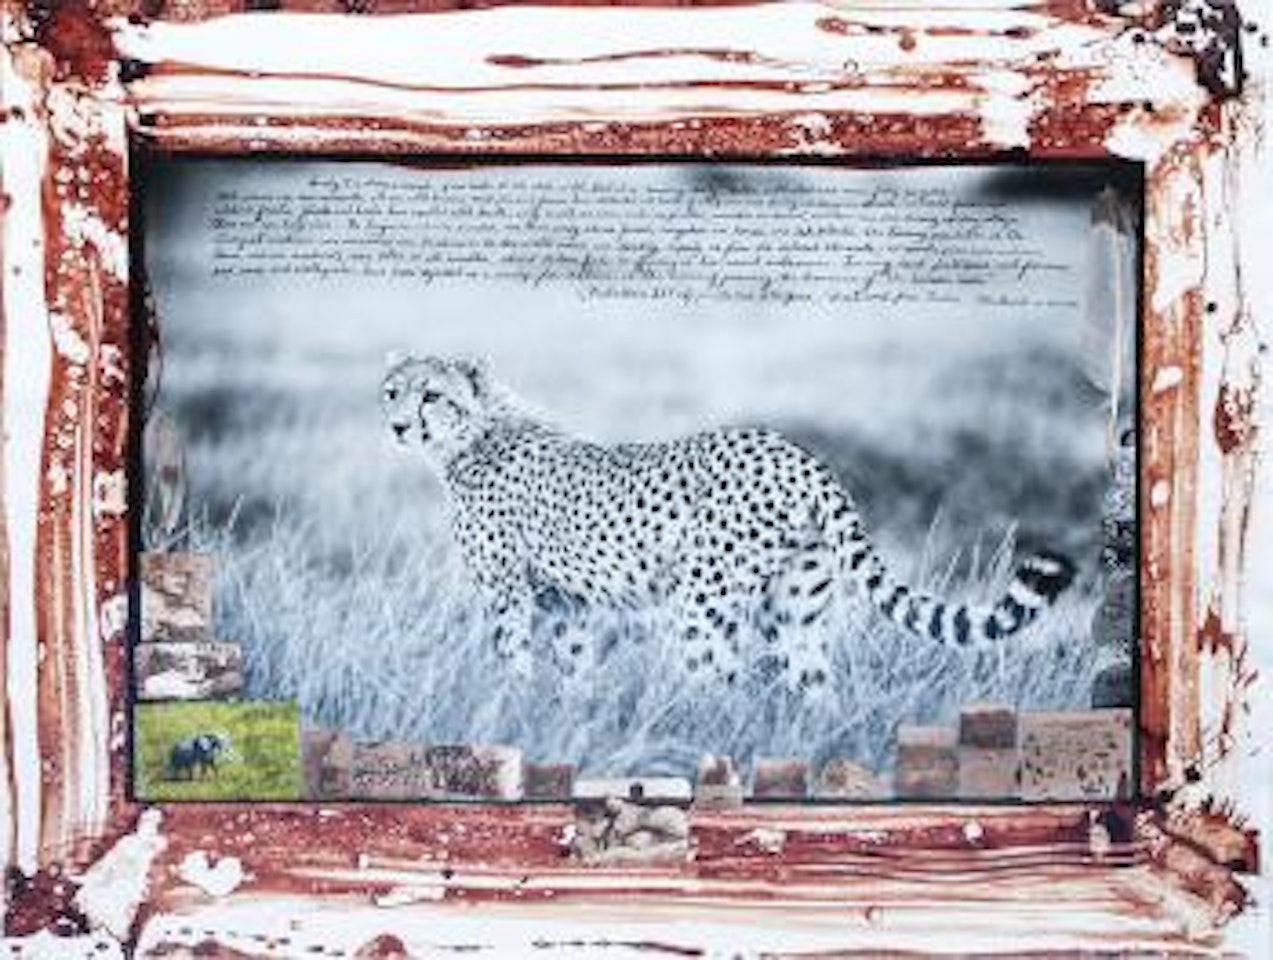 Single Cheetah by Peter Beard